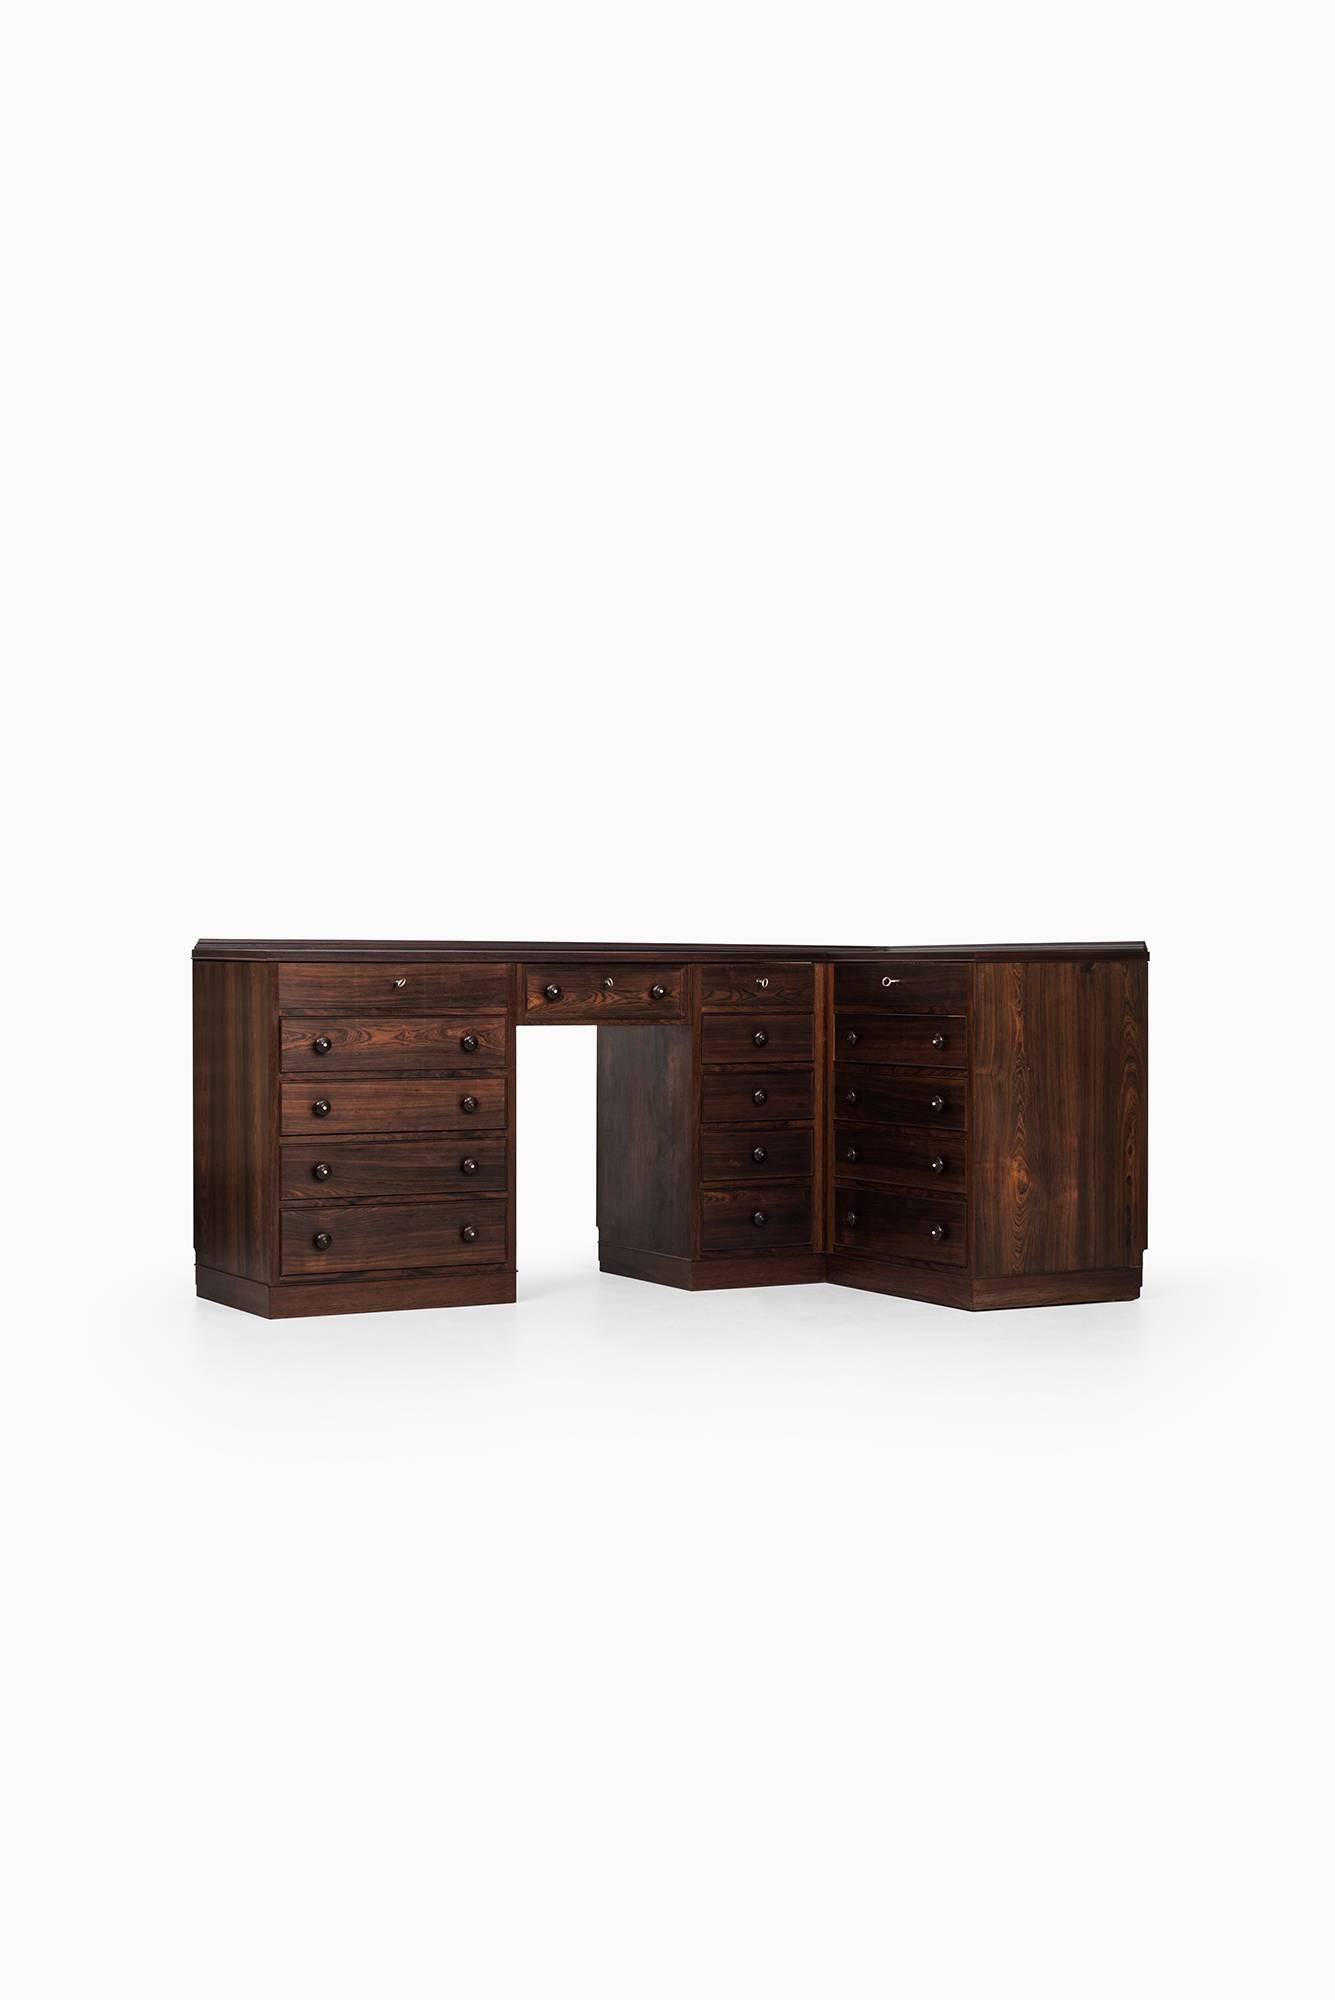 Danish Corner Desk / Vanity / Storage Unit in the Manner of Frode Holm For Sale